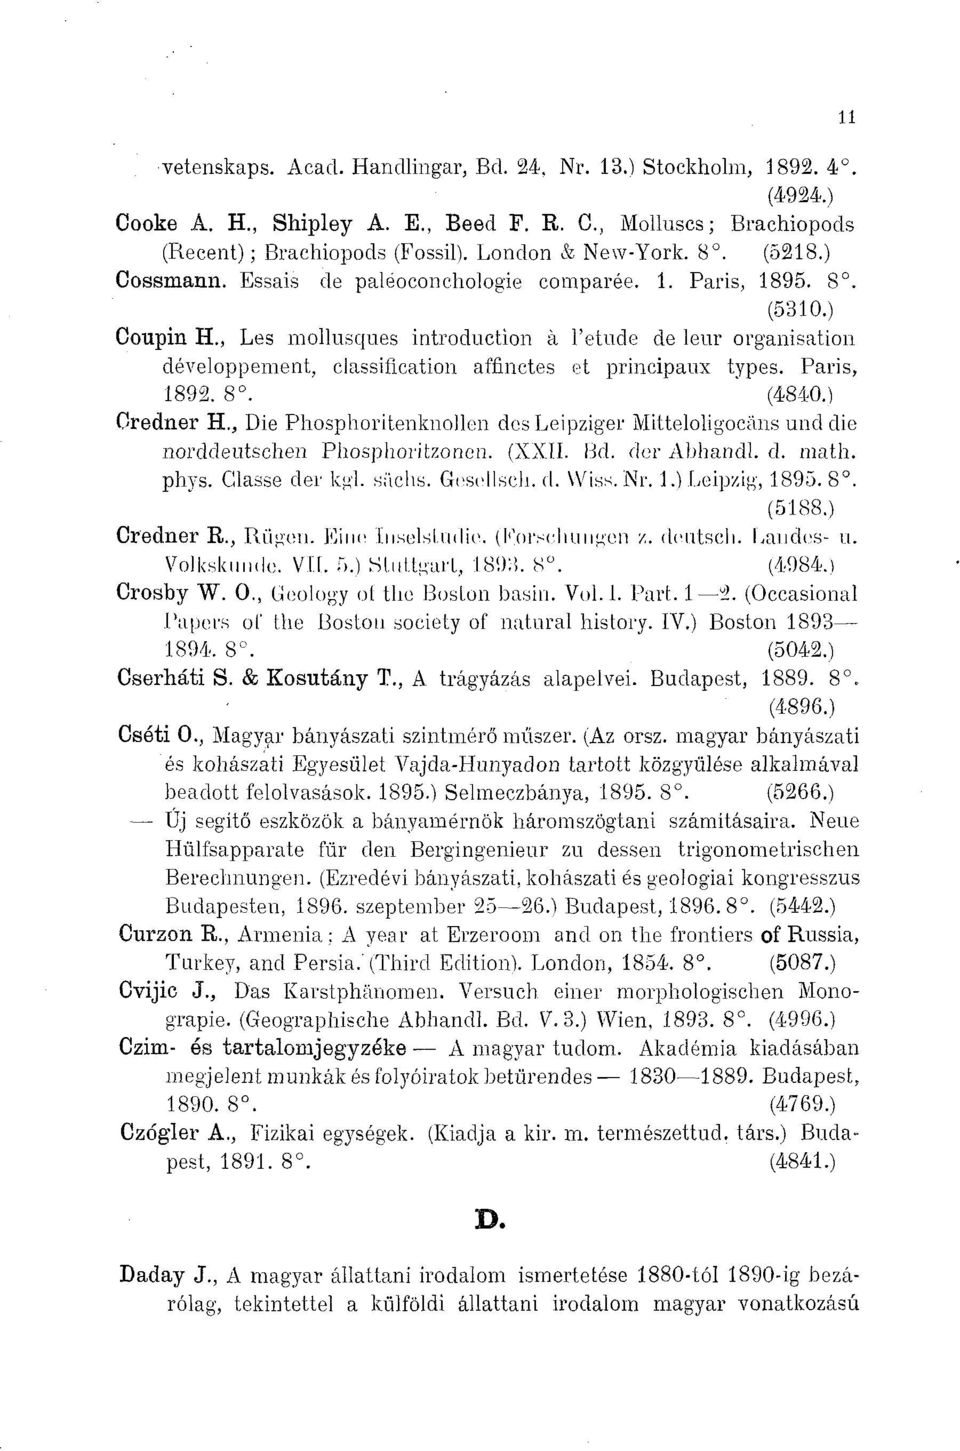 , Les mollusques introduction à l'étude de leur organisation développement, classification affinctes et principaux types. Paris, 1892. 8. (4840.) Oredner H.